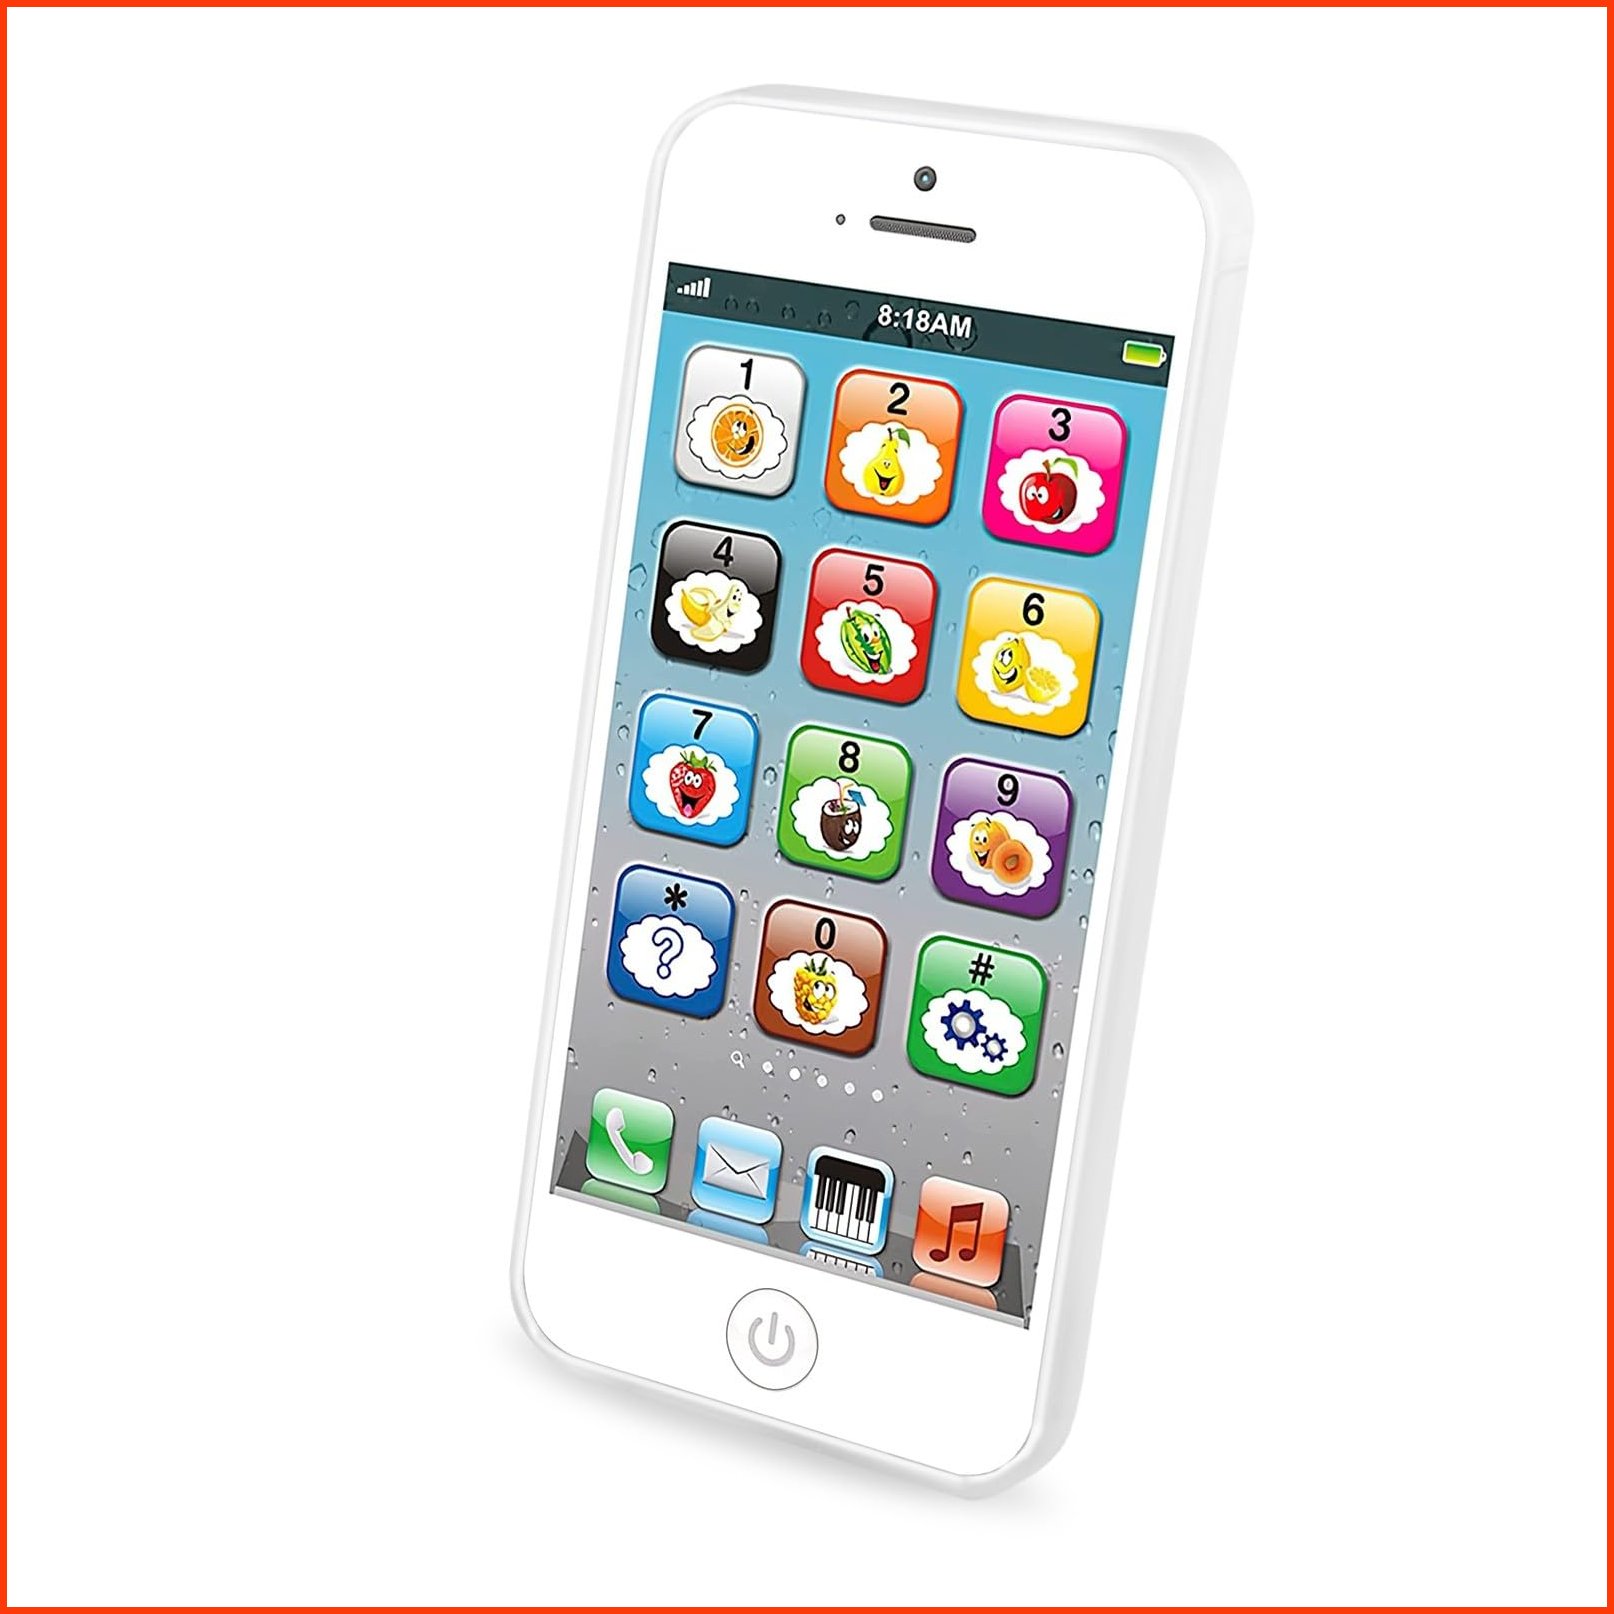 並行輸入品Wolmund Toy Learning Play Cell Phone with 8 Functions and Dazzling Lights Interactive Toy for Toddler Baby Kid